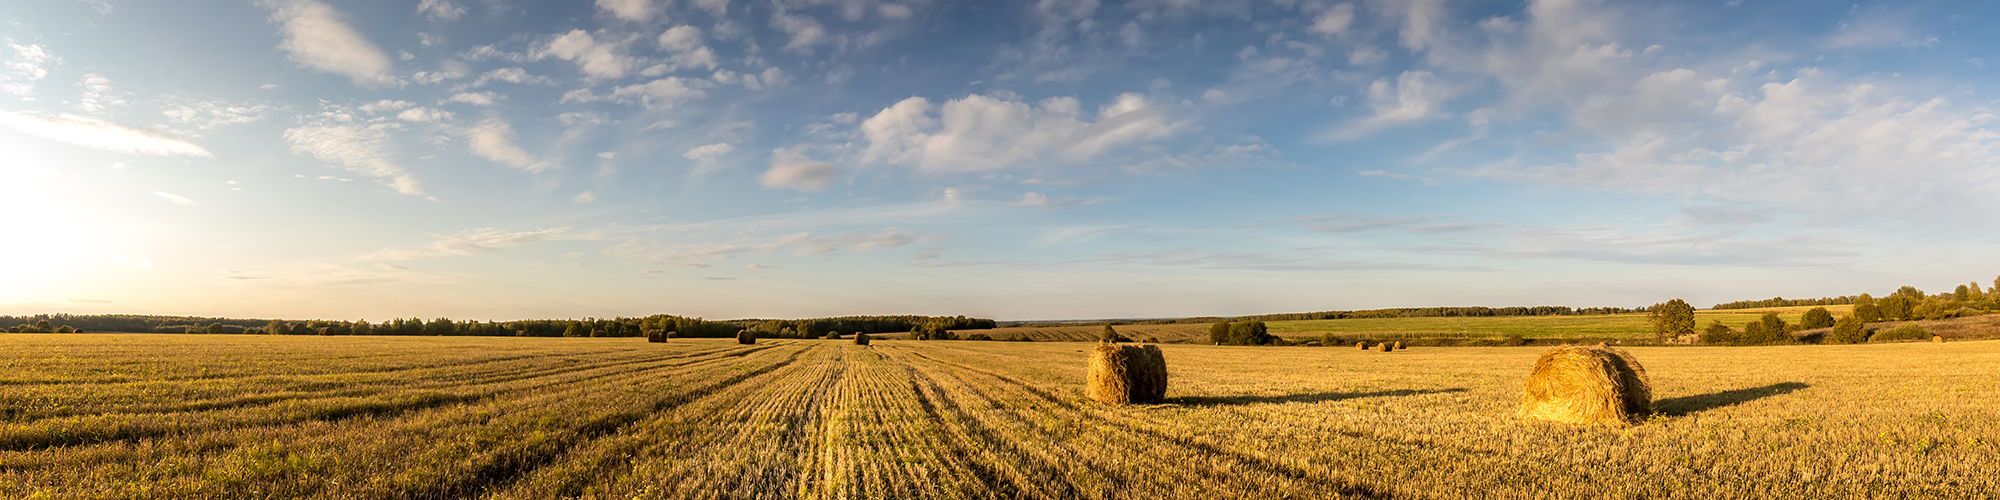 Field of haystacks